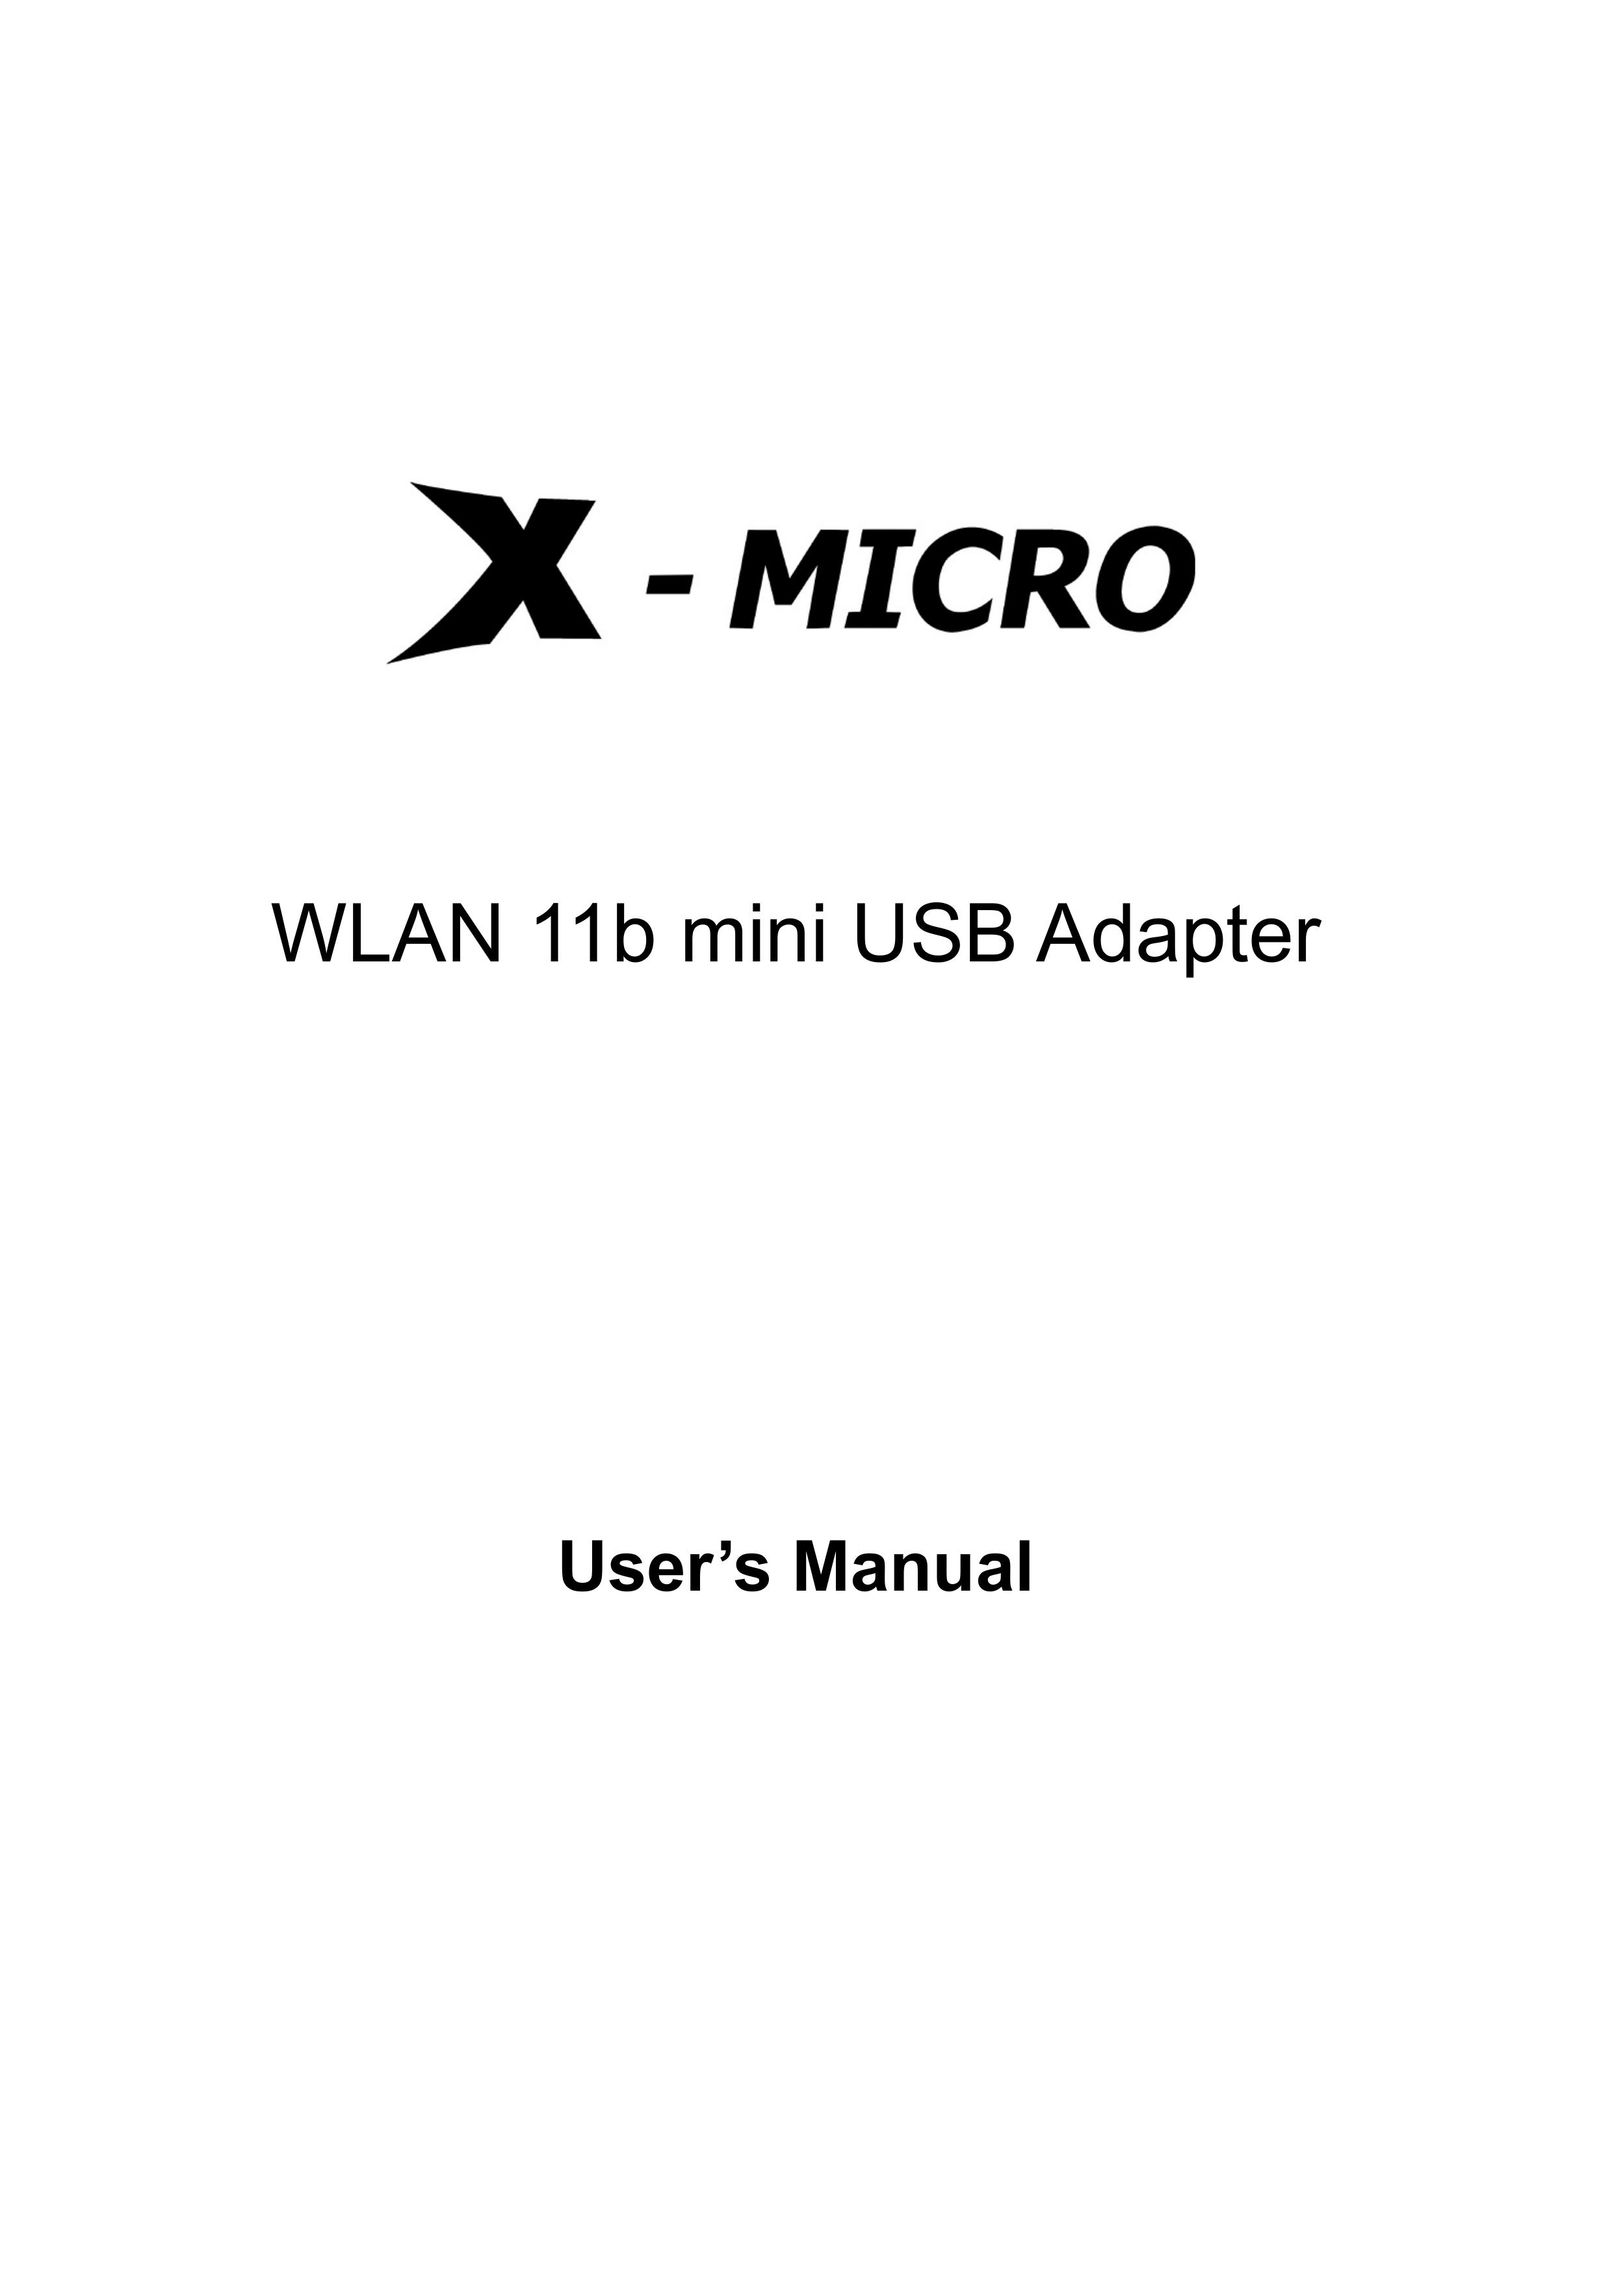 X-Micro Tech. 11b mini Network Card User Manual